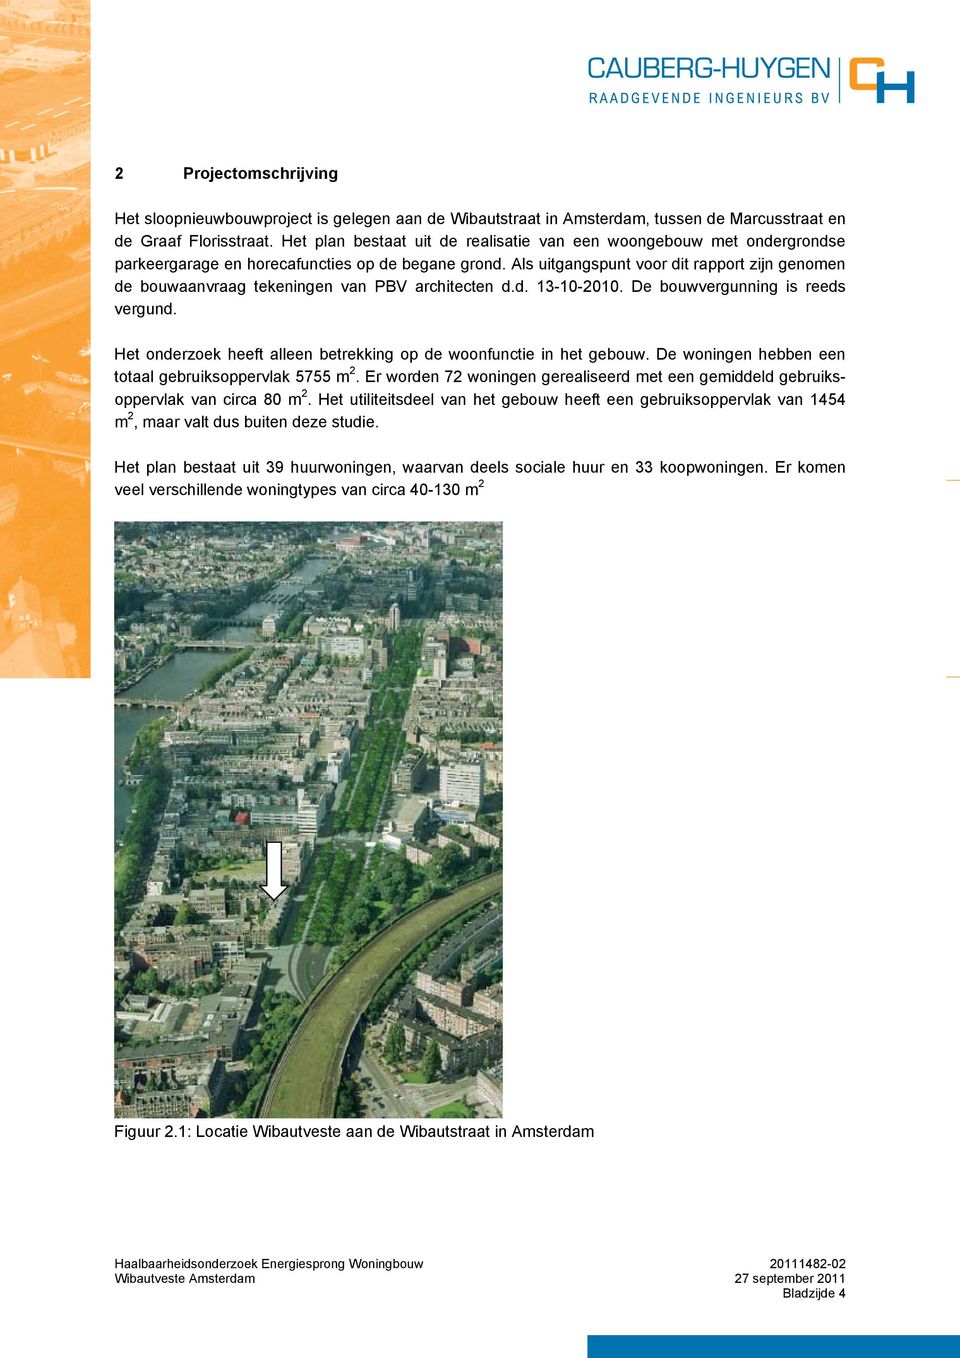 Als uitgangspunt voor dit rapport zijn genomen de bouwaanvraag tekeningen van PBV architecten d.d. 13-10-2010. De bouwvergunning is reeds vergund.